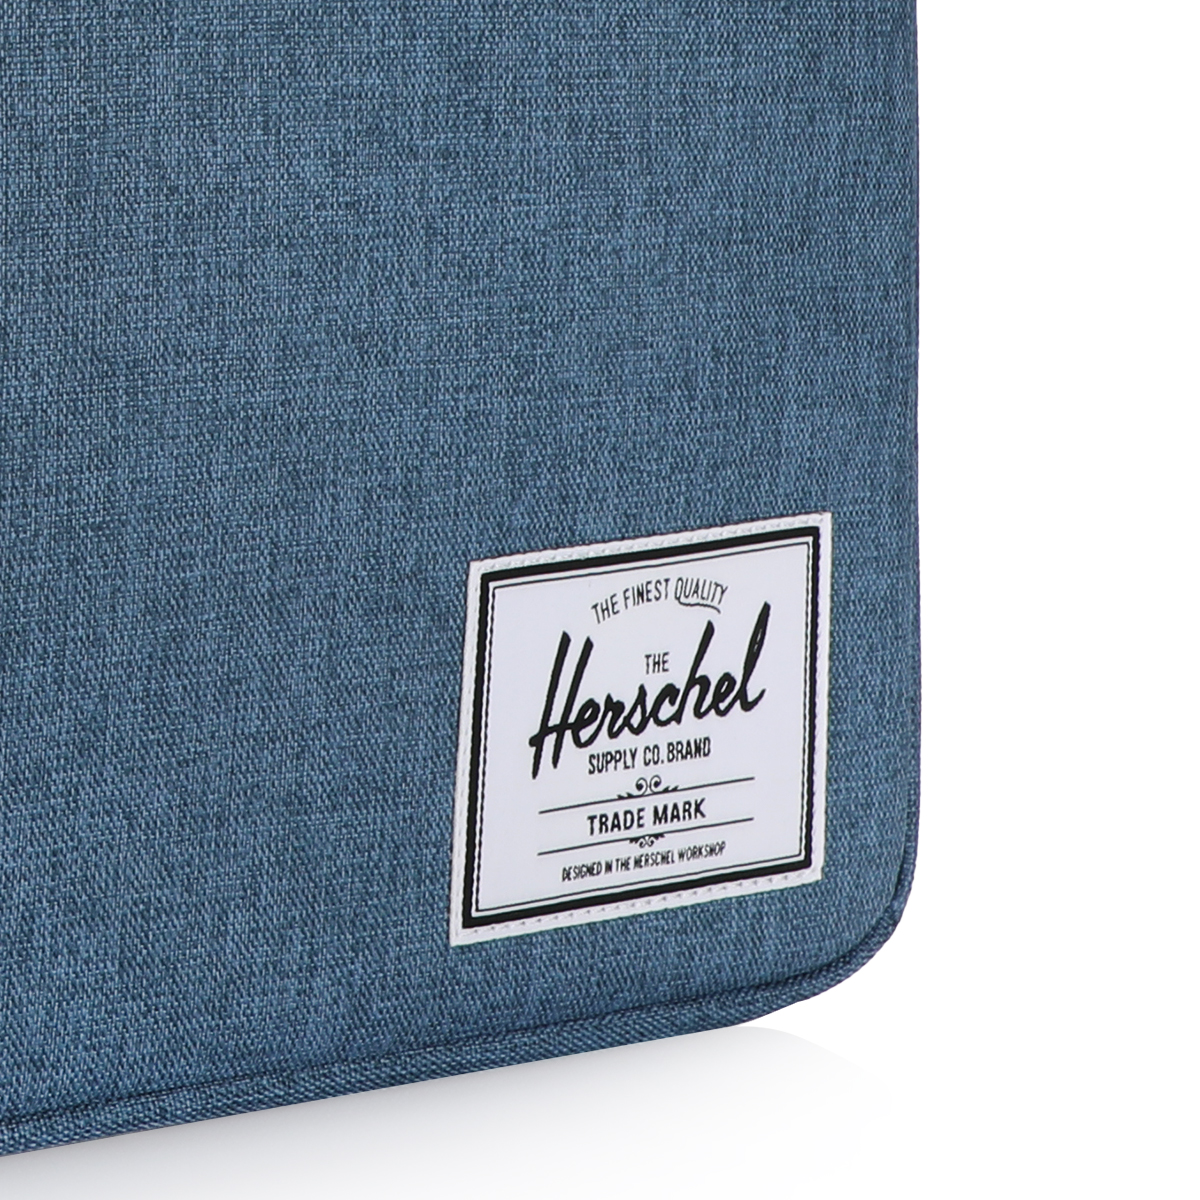 Herschel Supply Co. Anchor 13 MacBook Sleeve - Black